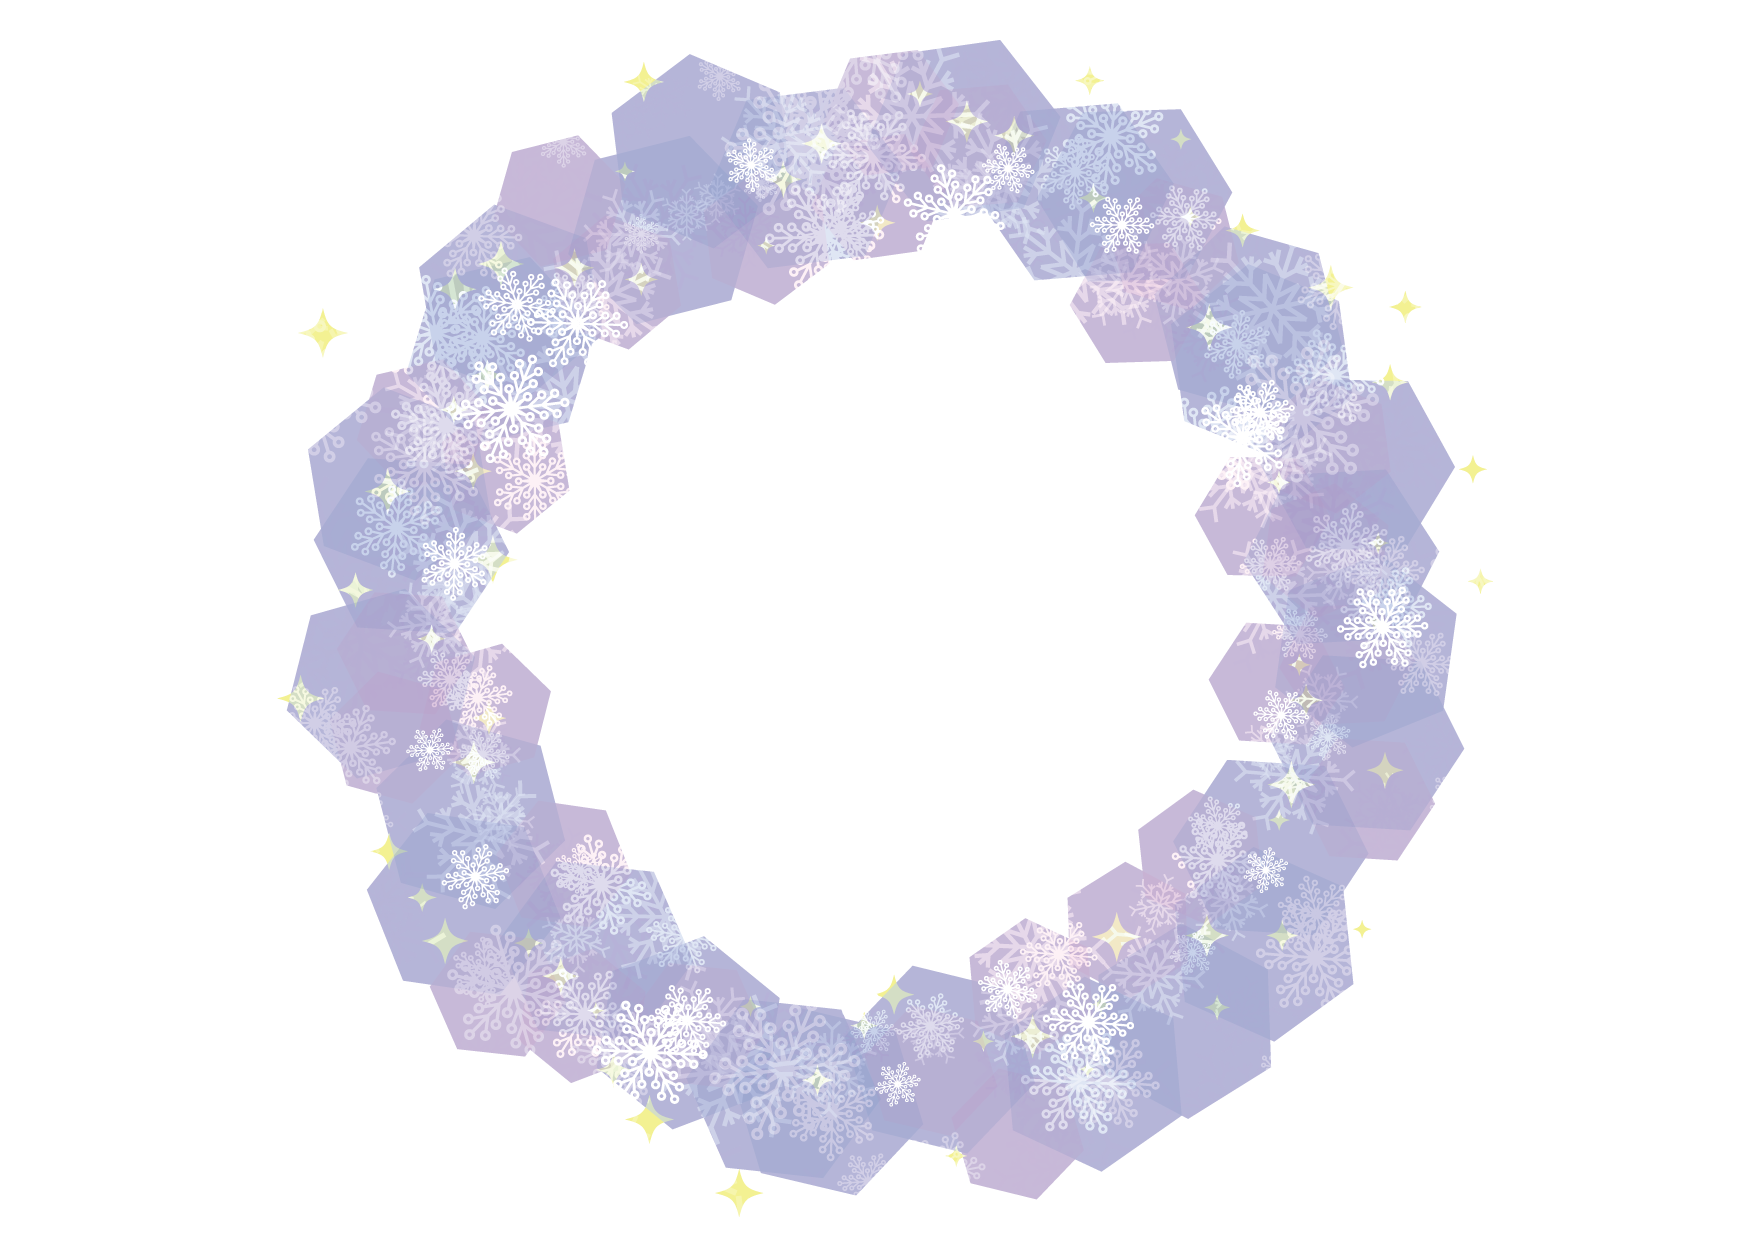 可愛いイラスト無料 雪の結晶 フレーム 背景 紫色 Free Illustration Snowflakes Frame Background Purple 公式 イラストダウンロード